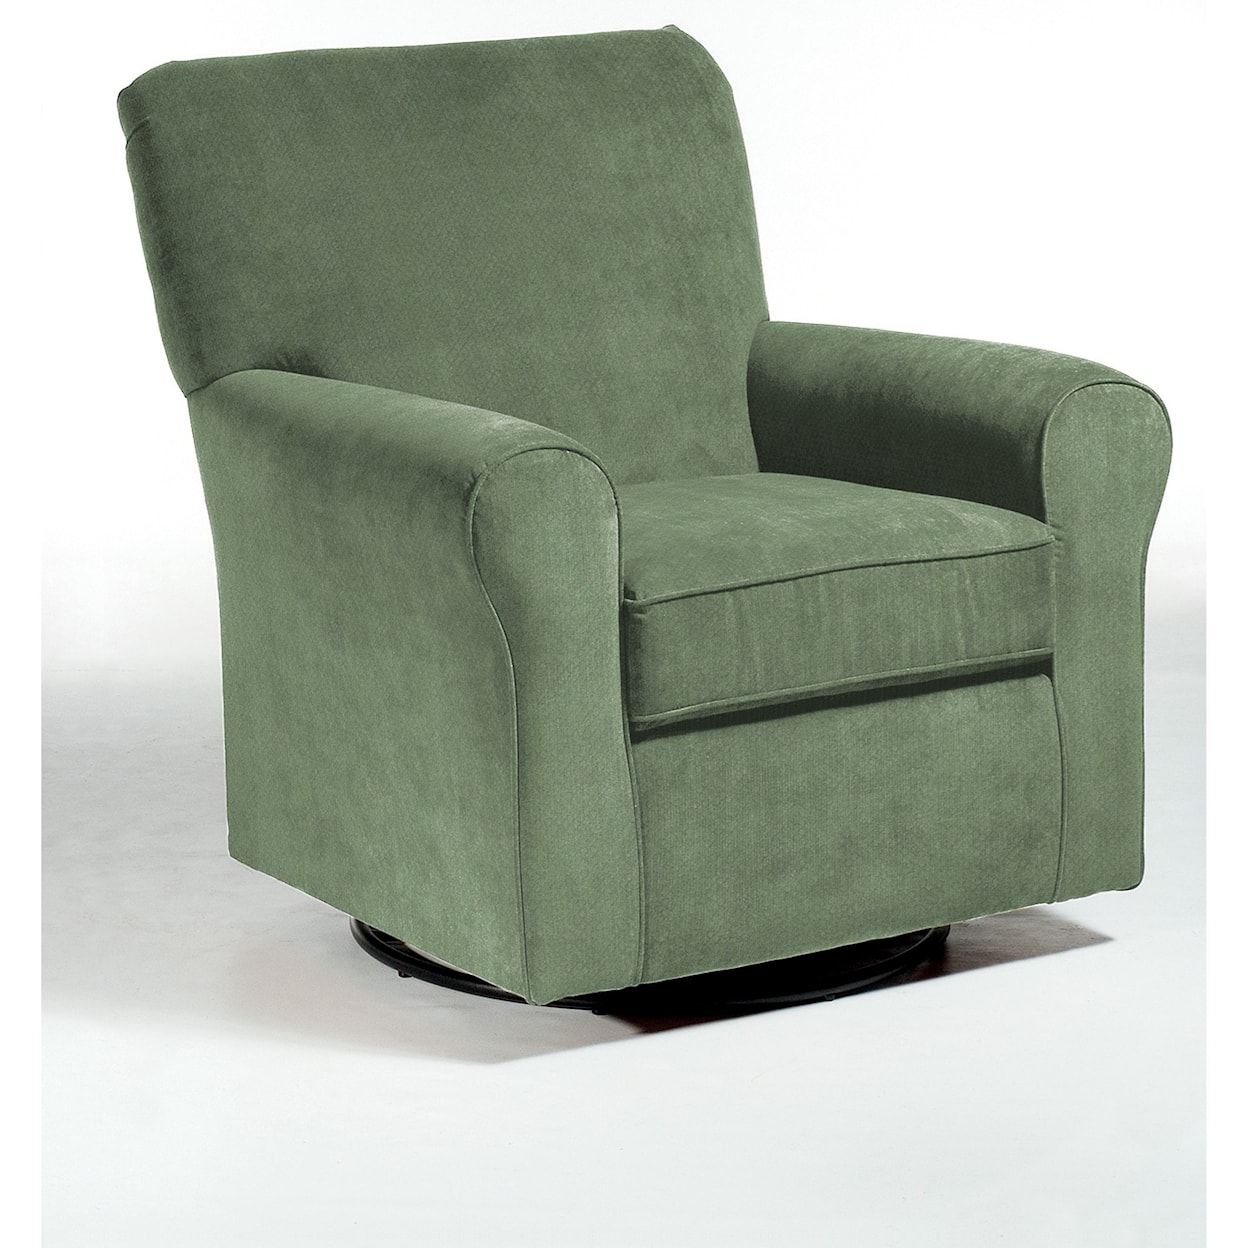 Best Home Furnishings Swivel Glide Chairs Hagen Swivel Glide